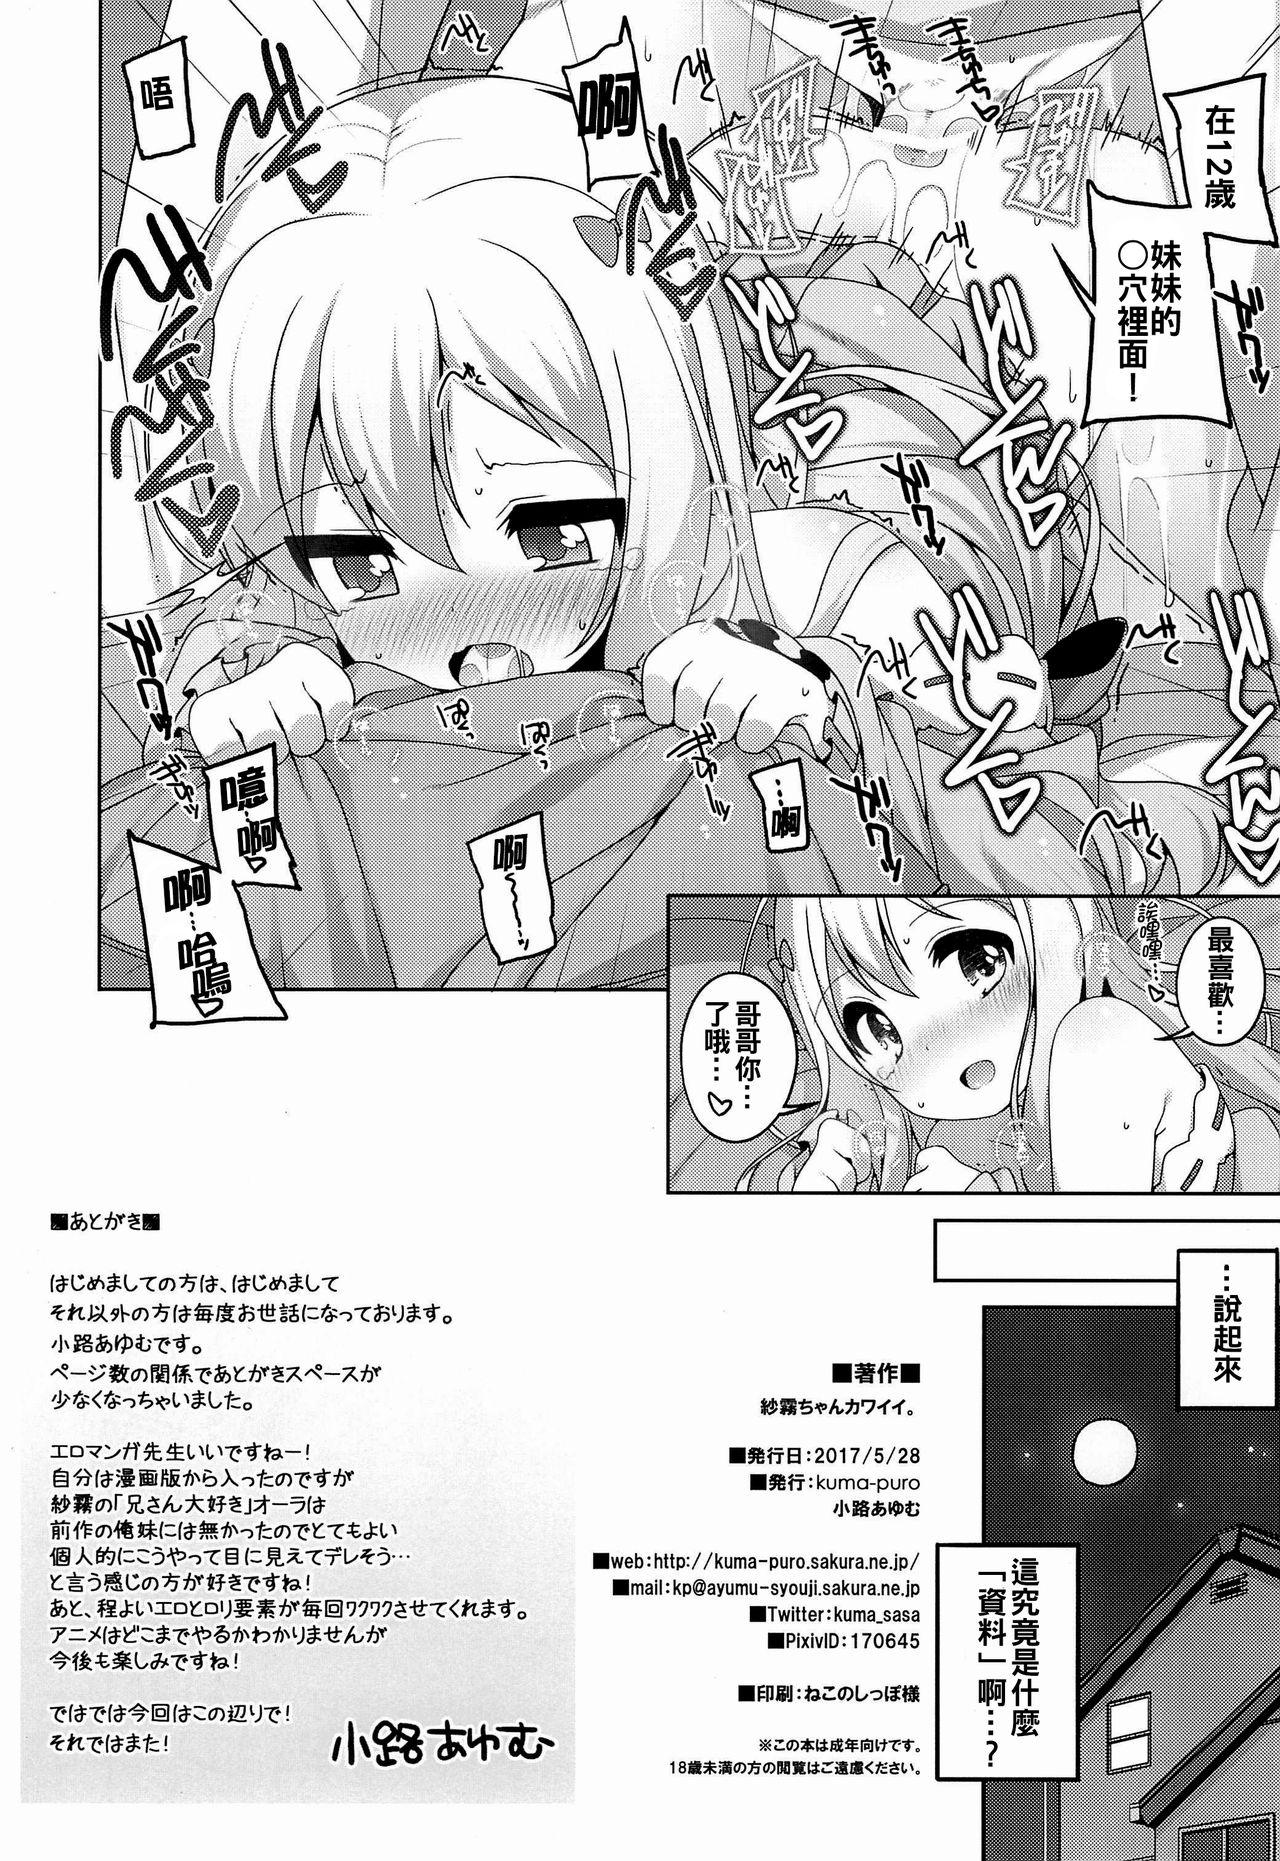 Peru Sagiri-chan Kawaii. - Eromanga sensei Enema - Page 11